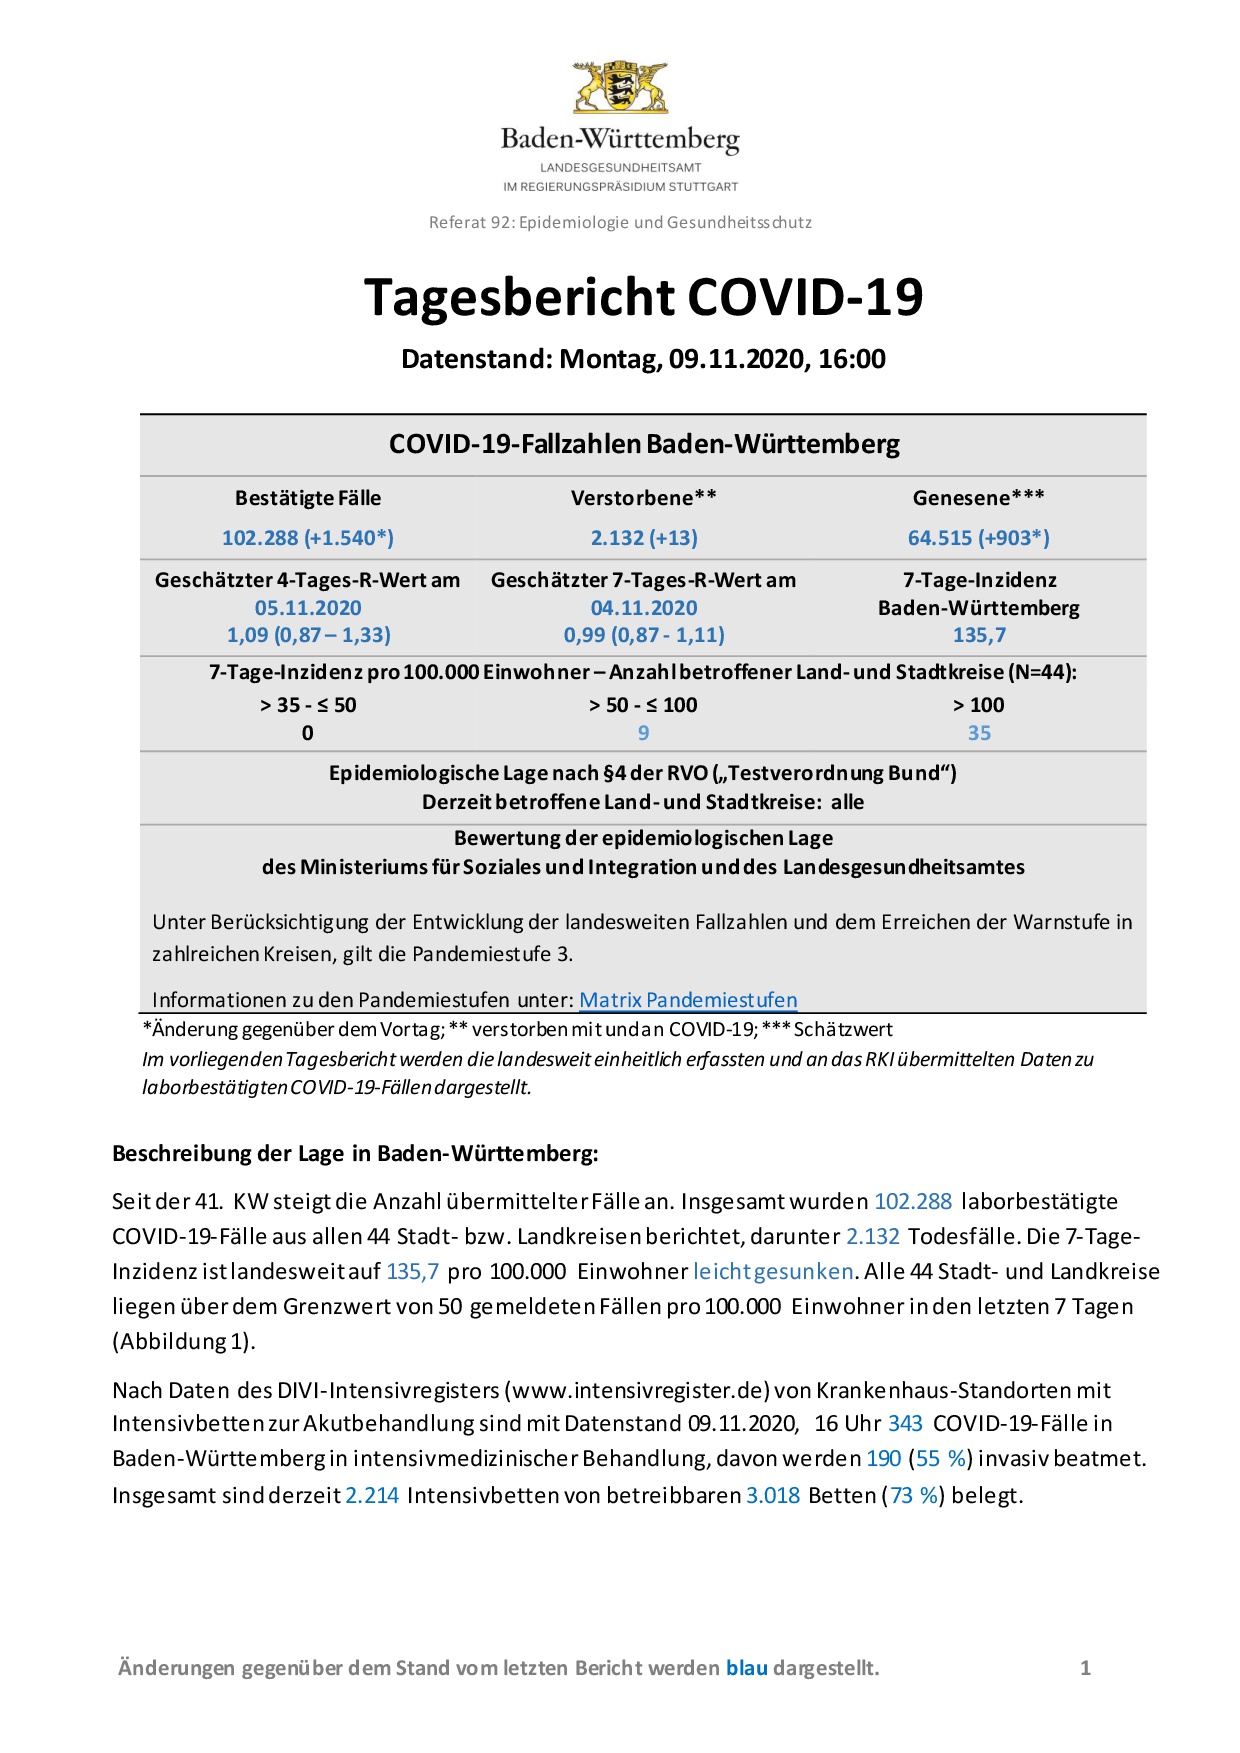 COVID-19 Tagesbericht (09.11.2020) des Landesgesundheitsamts Baden-Württemberg – (ausführlicher)